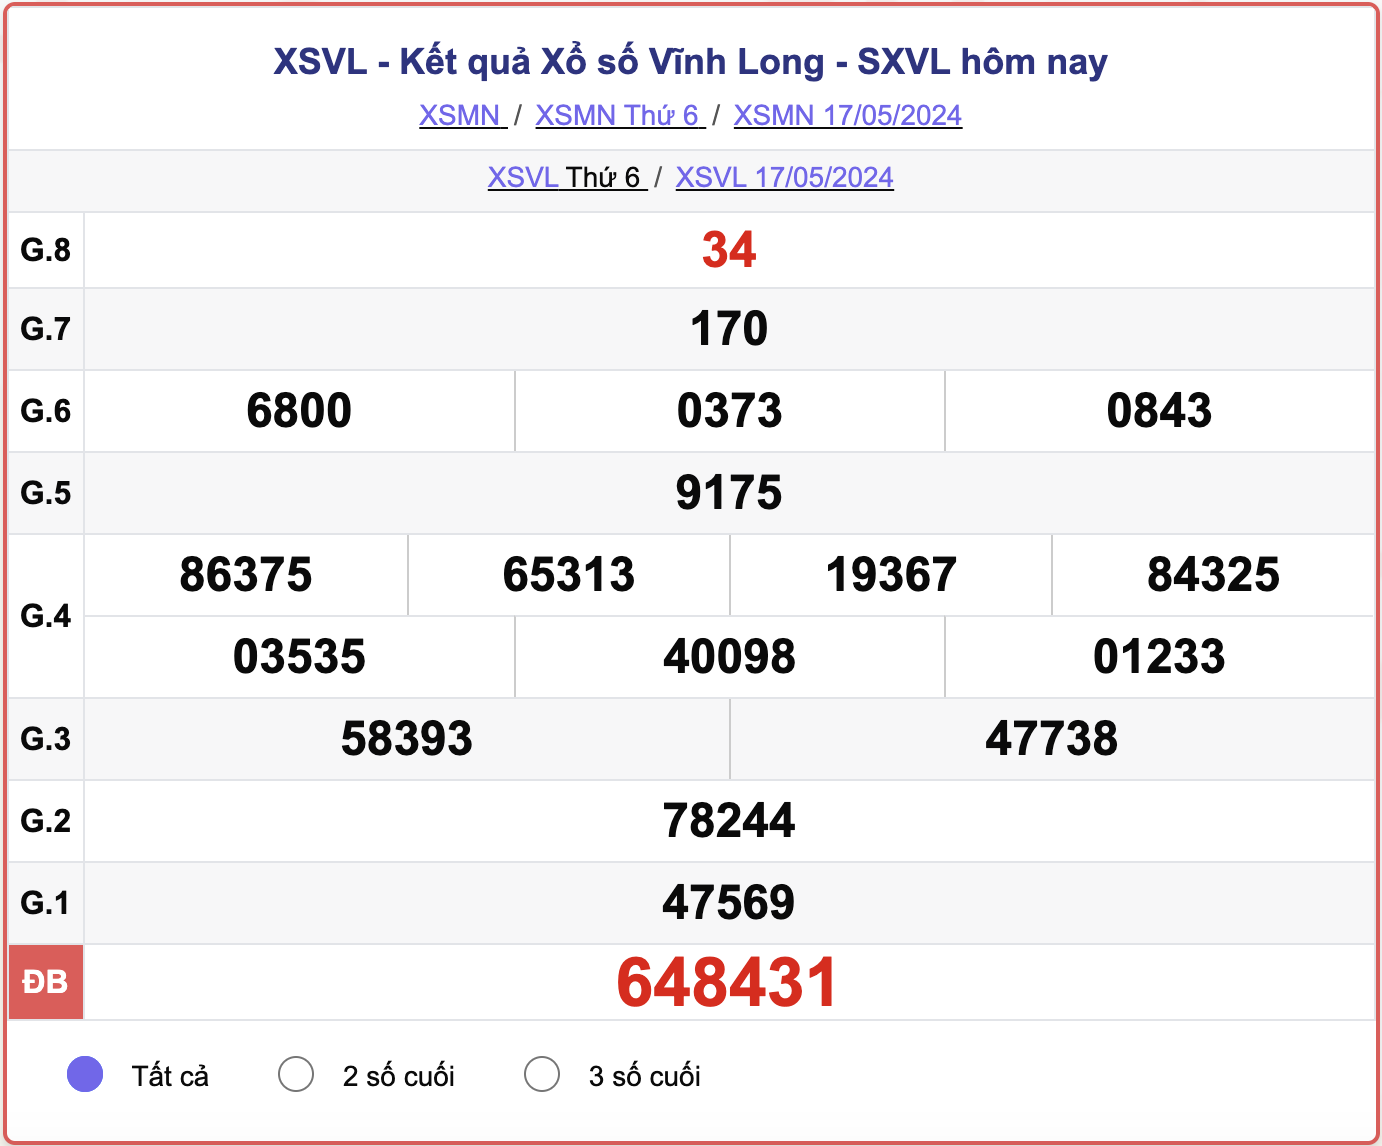 XSVL thứ Sáu, kết quả xổ số Vĩnh Long ngày 17/5/2024.